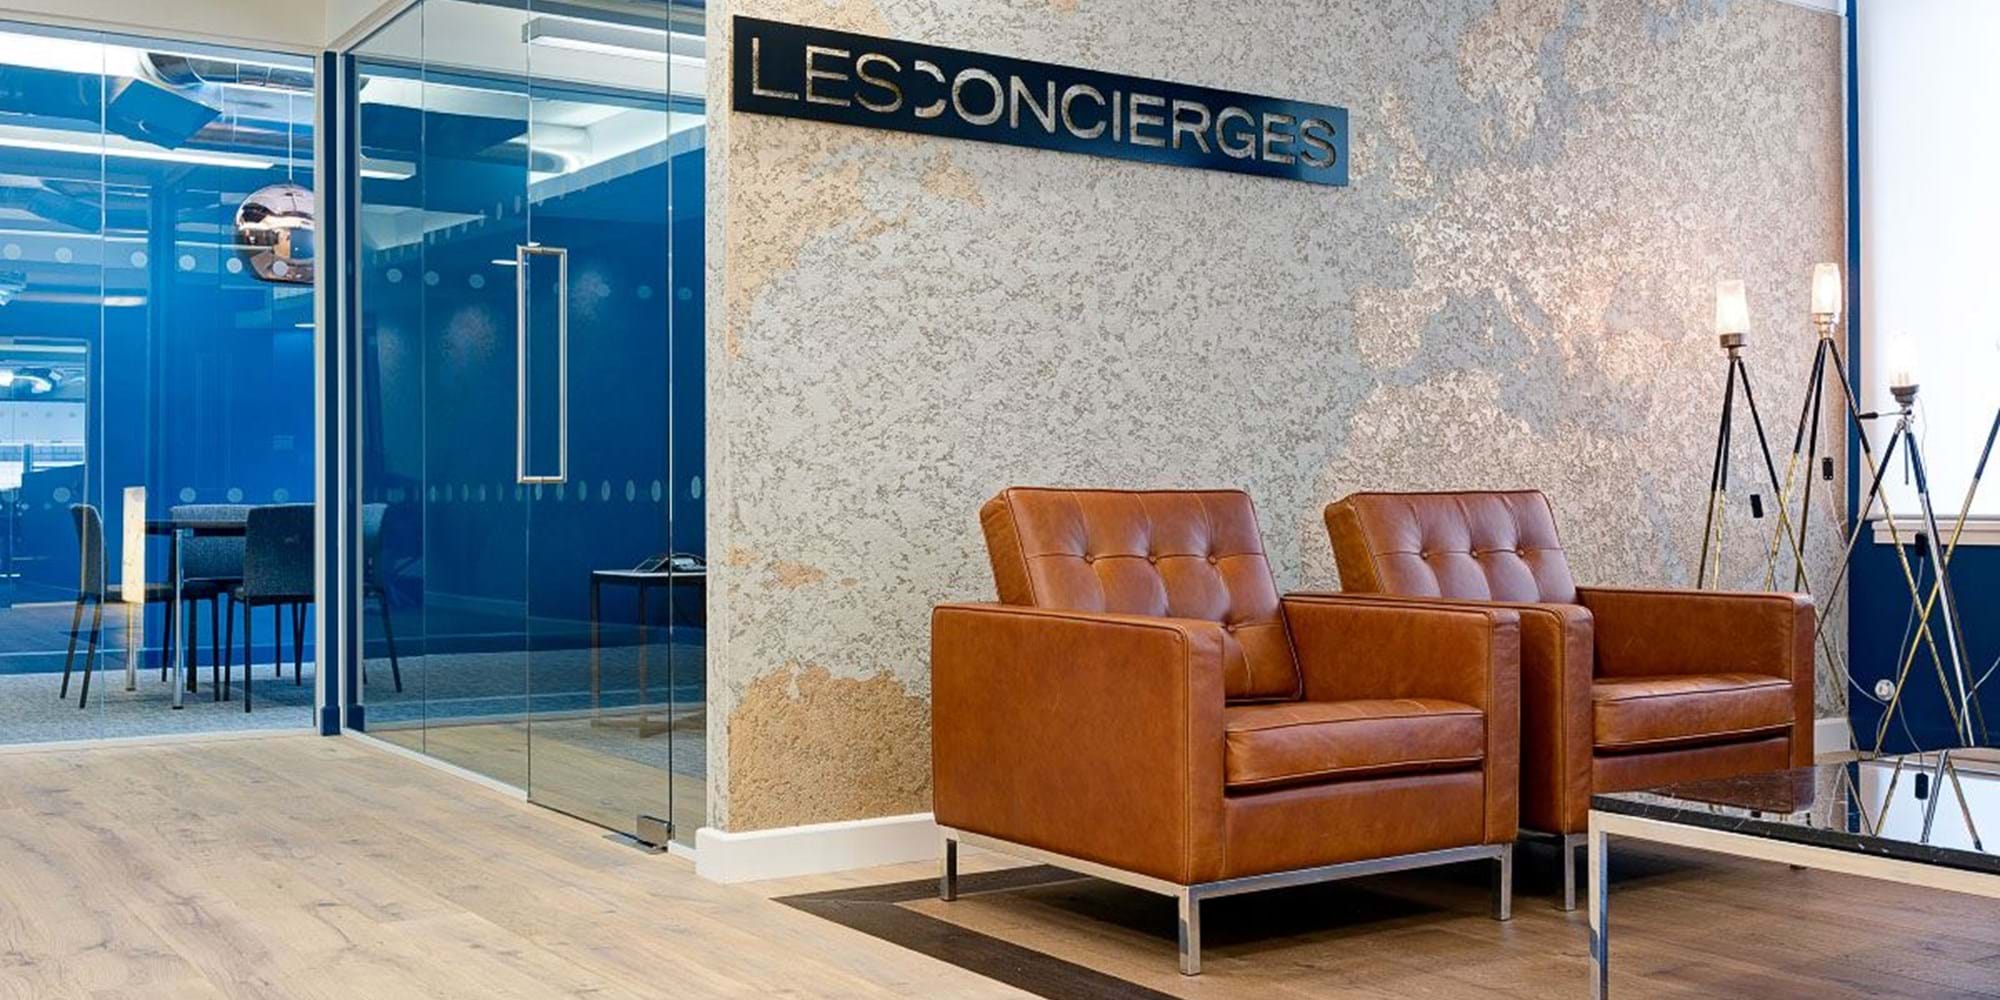 Modus Workspace office design, fit out and refurbishment - Les Concierges - Breakout - Les Concierges 02.jpg